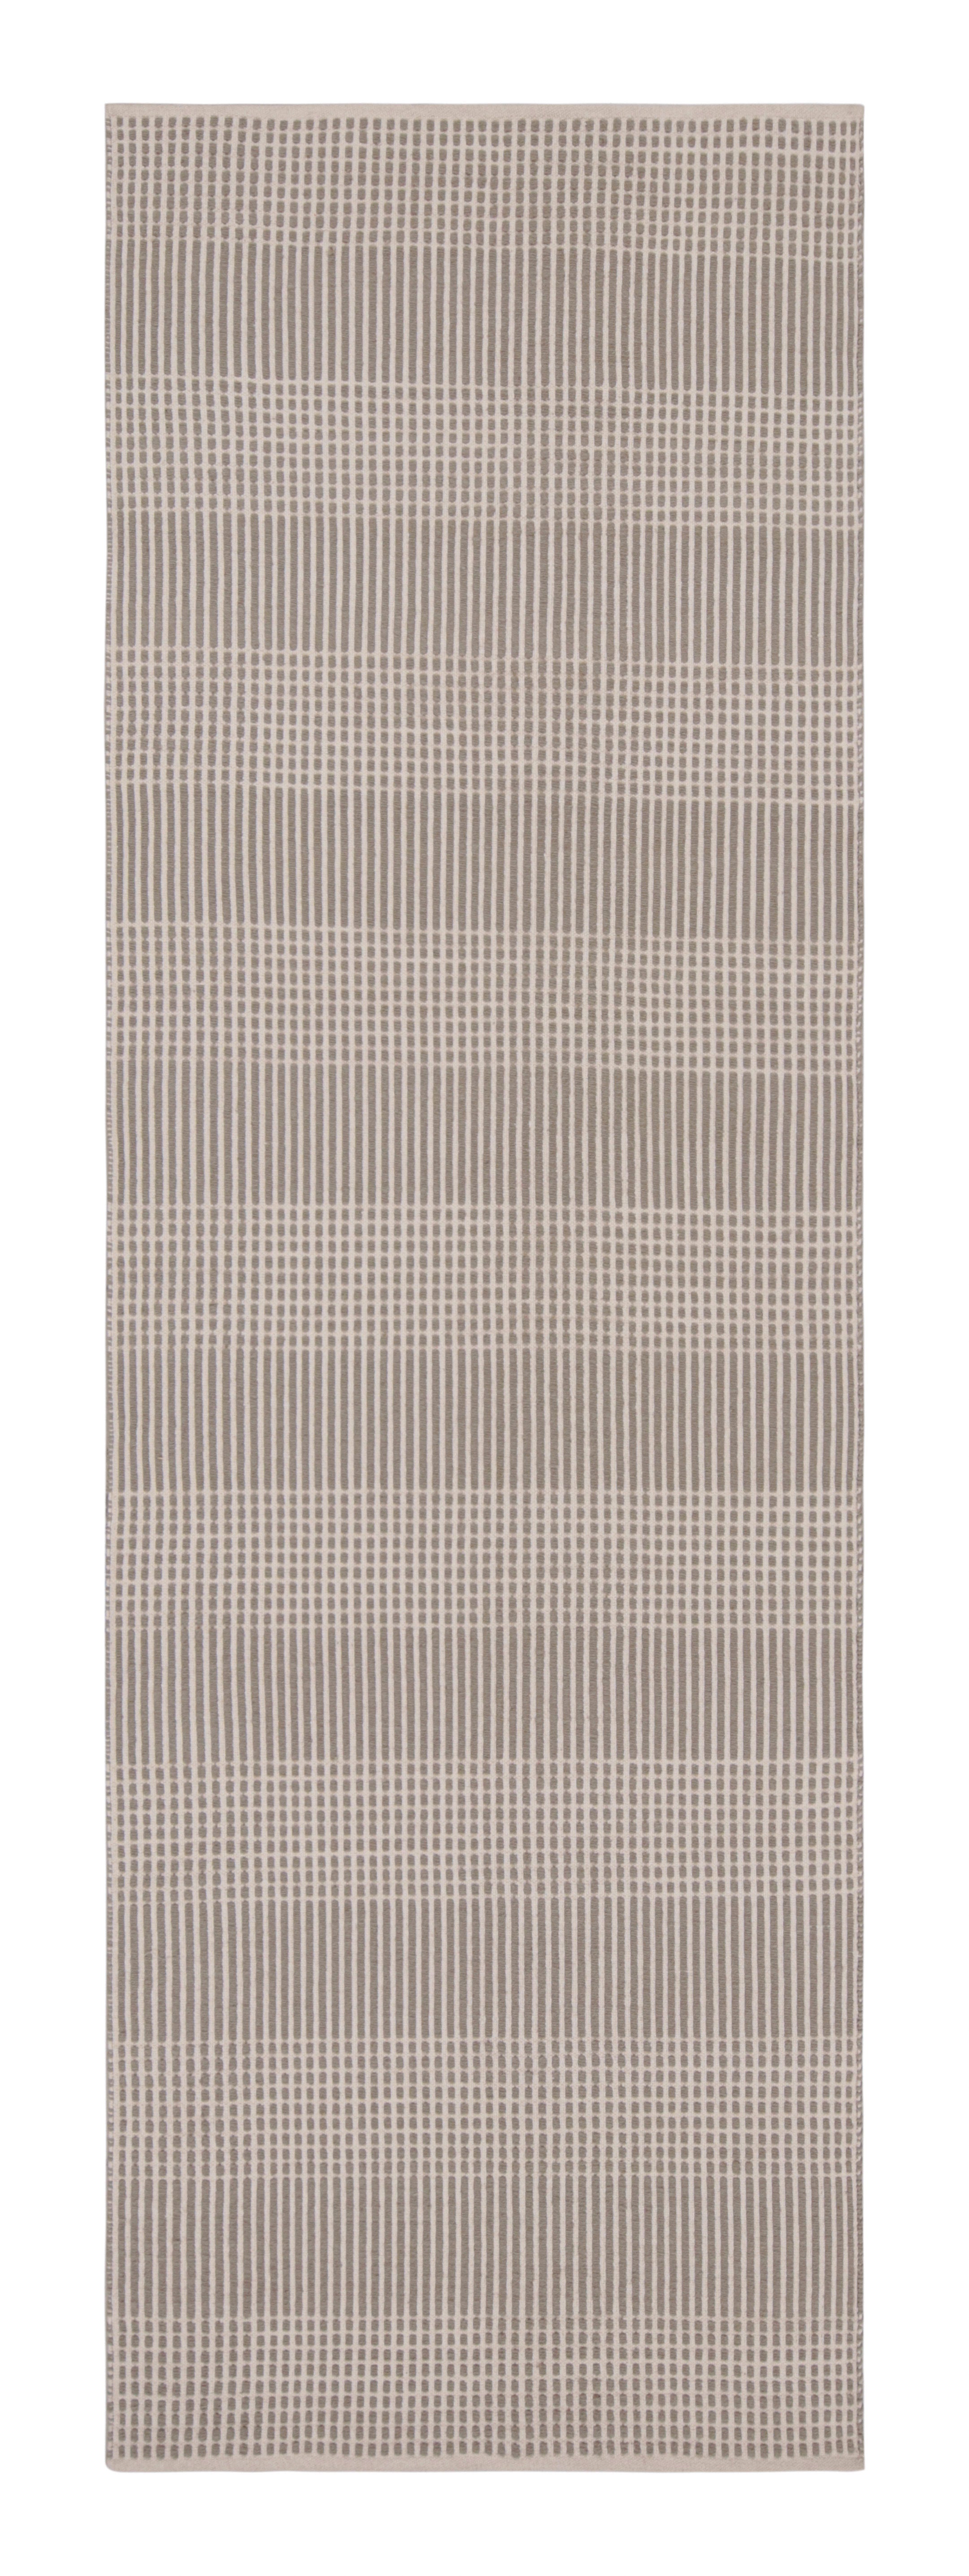 Tissage plat moderne beige brun à motifs géométriques rayés